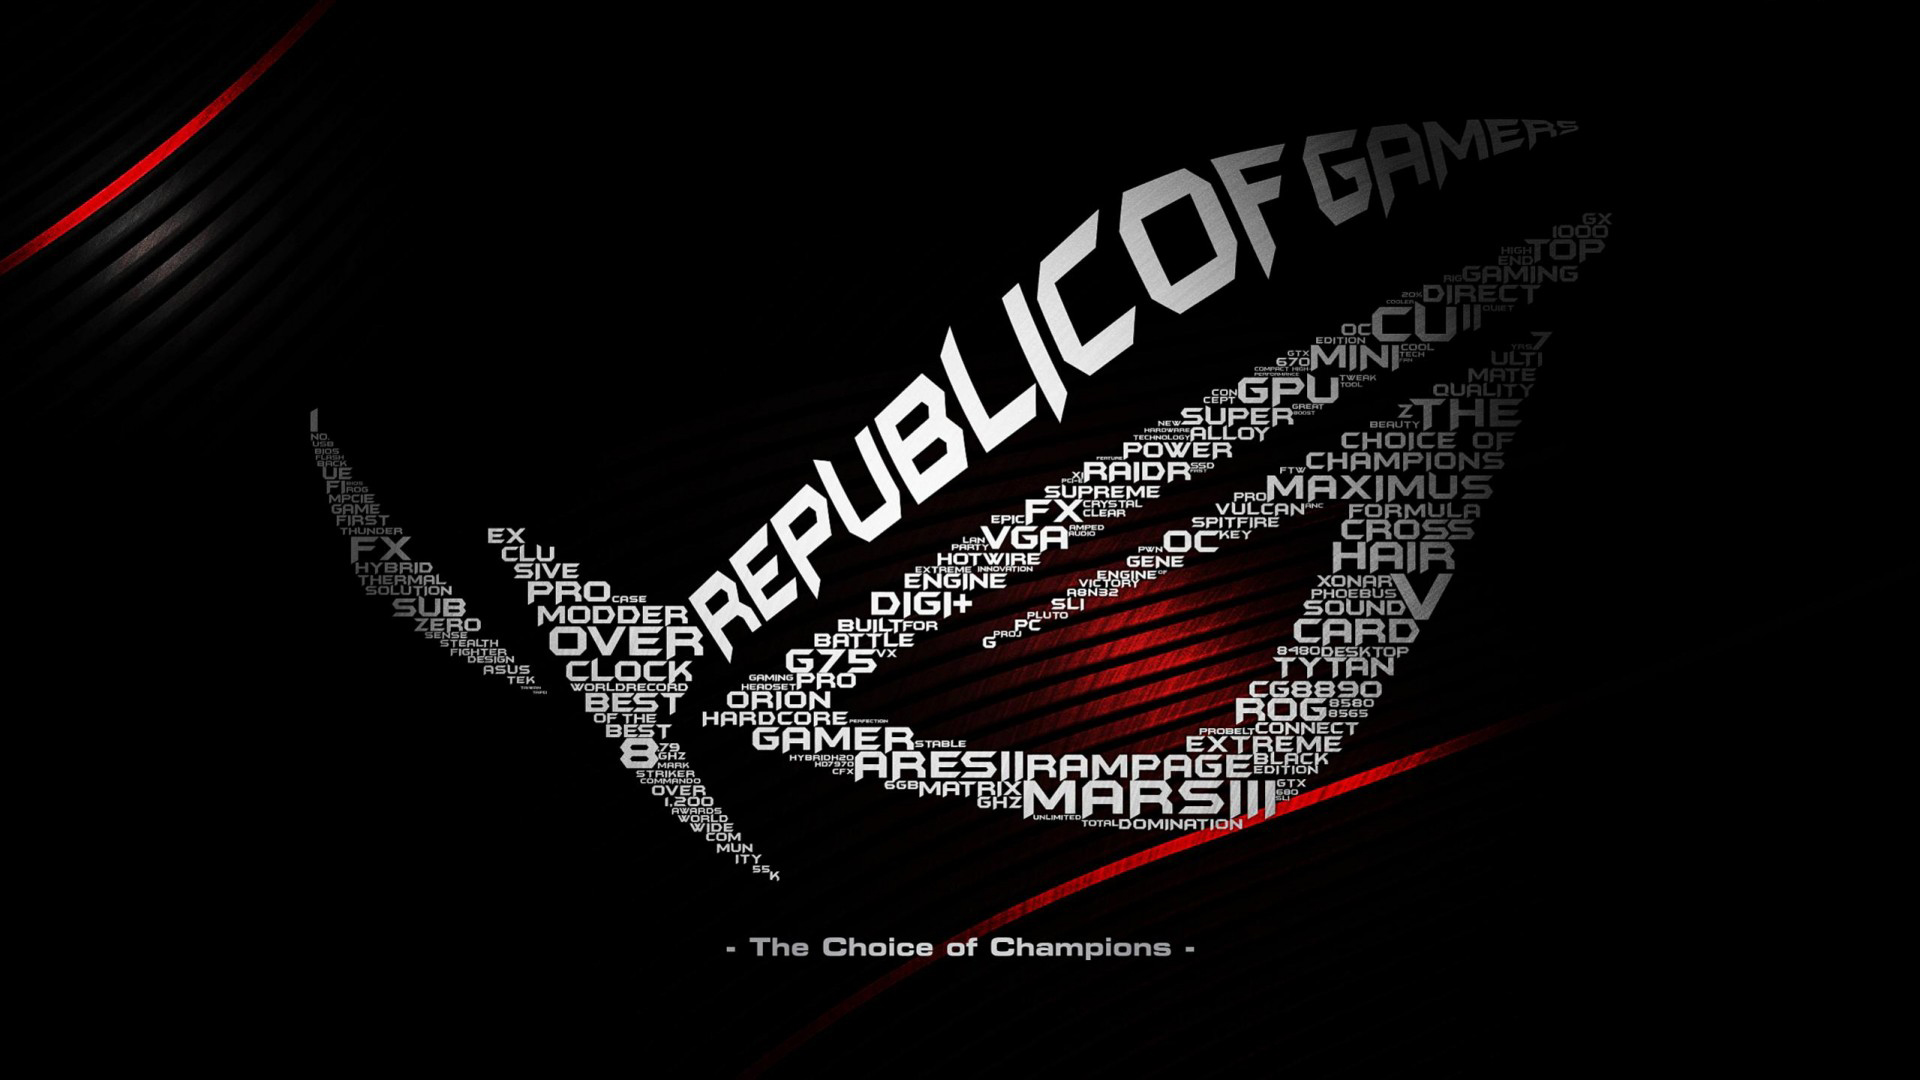 Republic of Gamers HD Wallpaper - WallpaperSafari